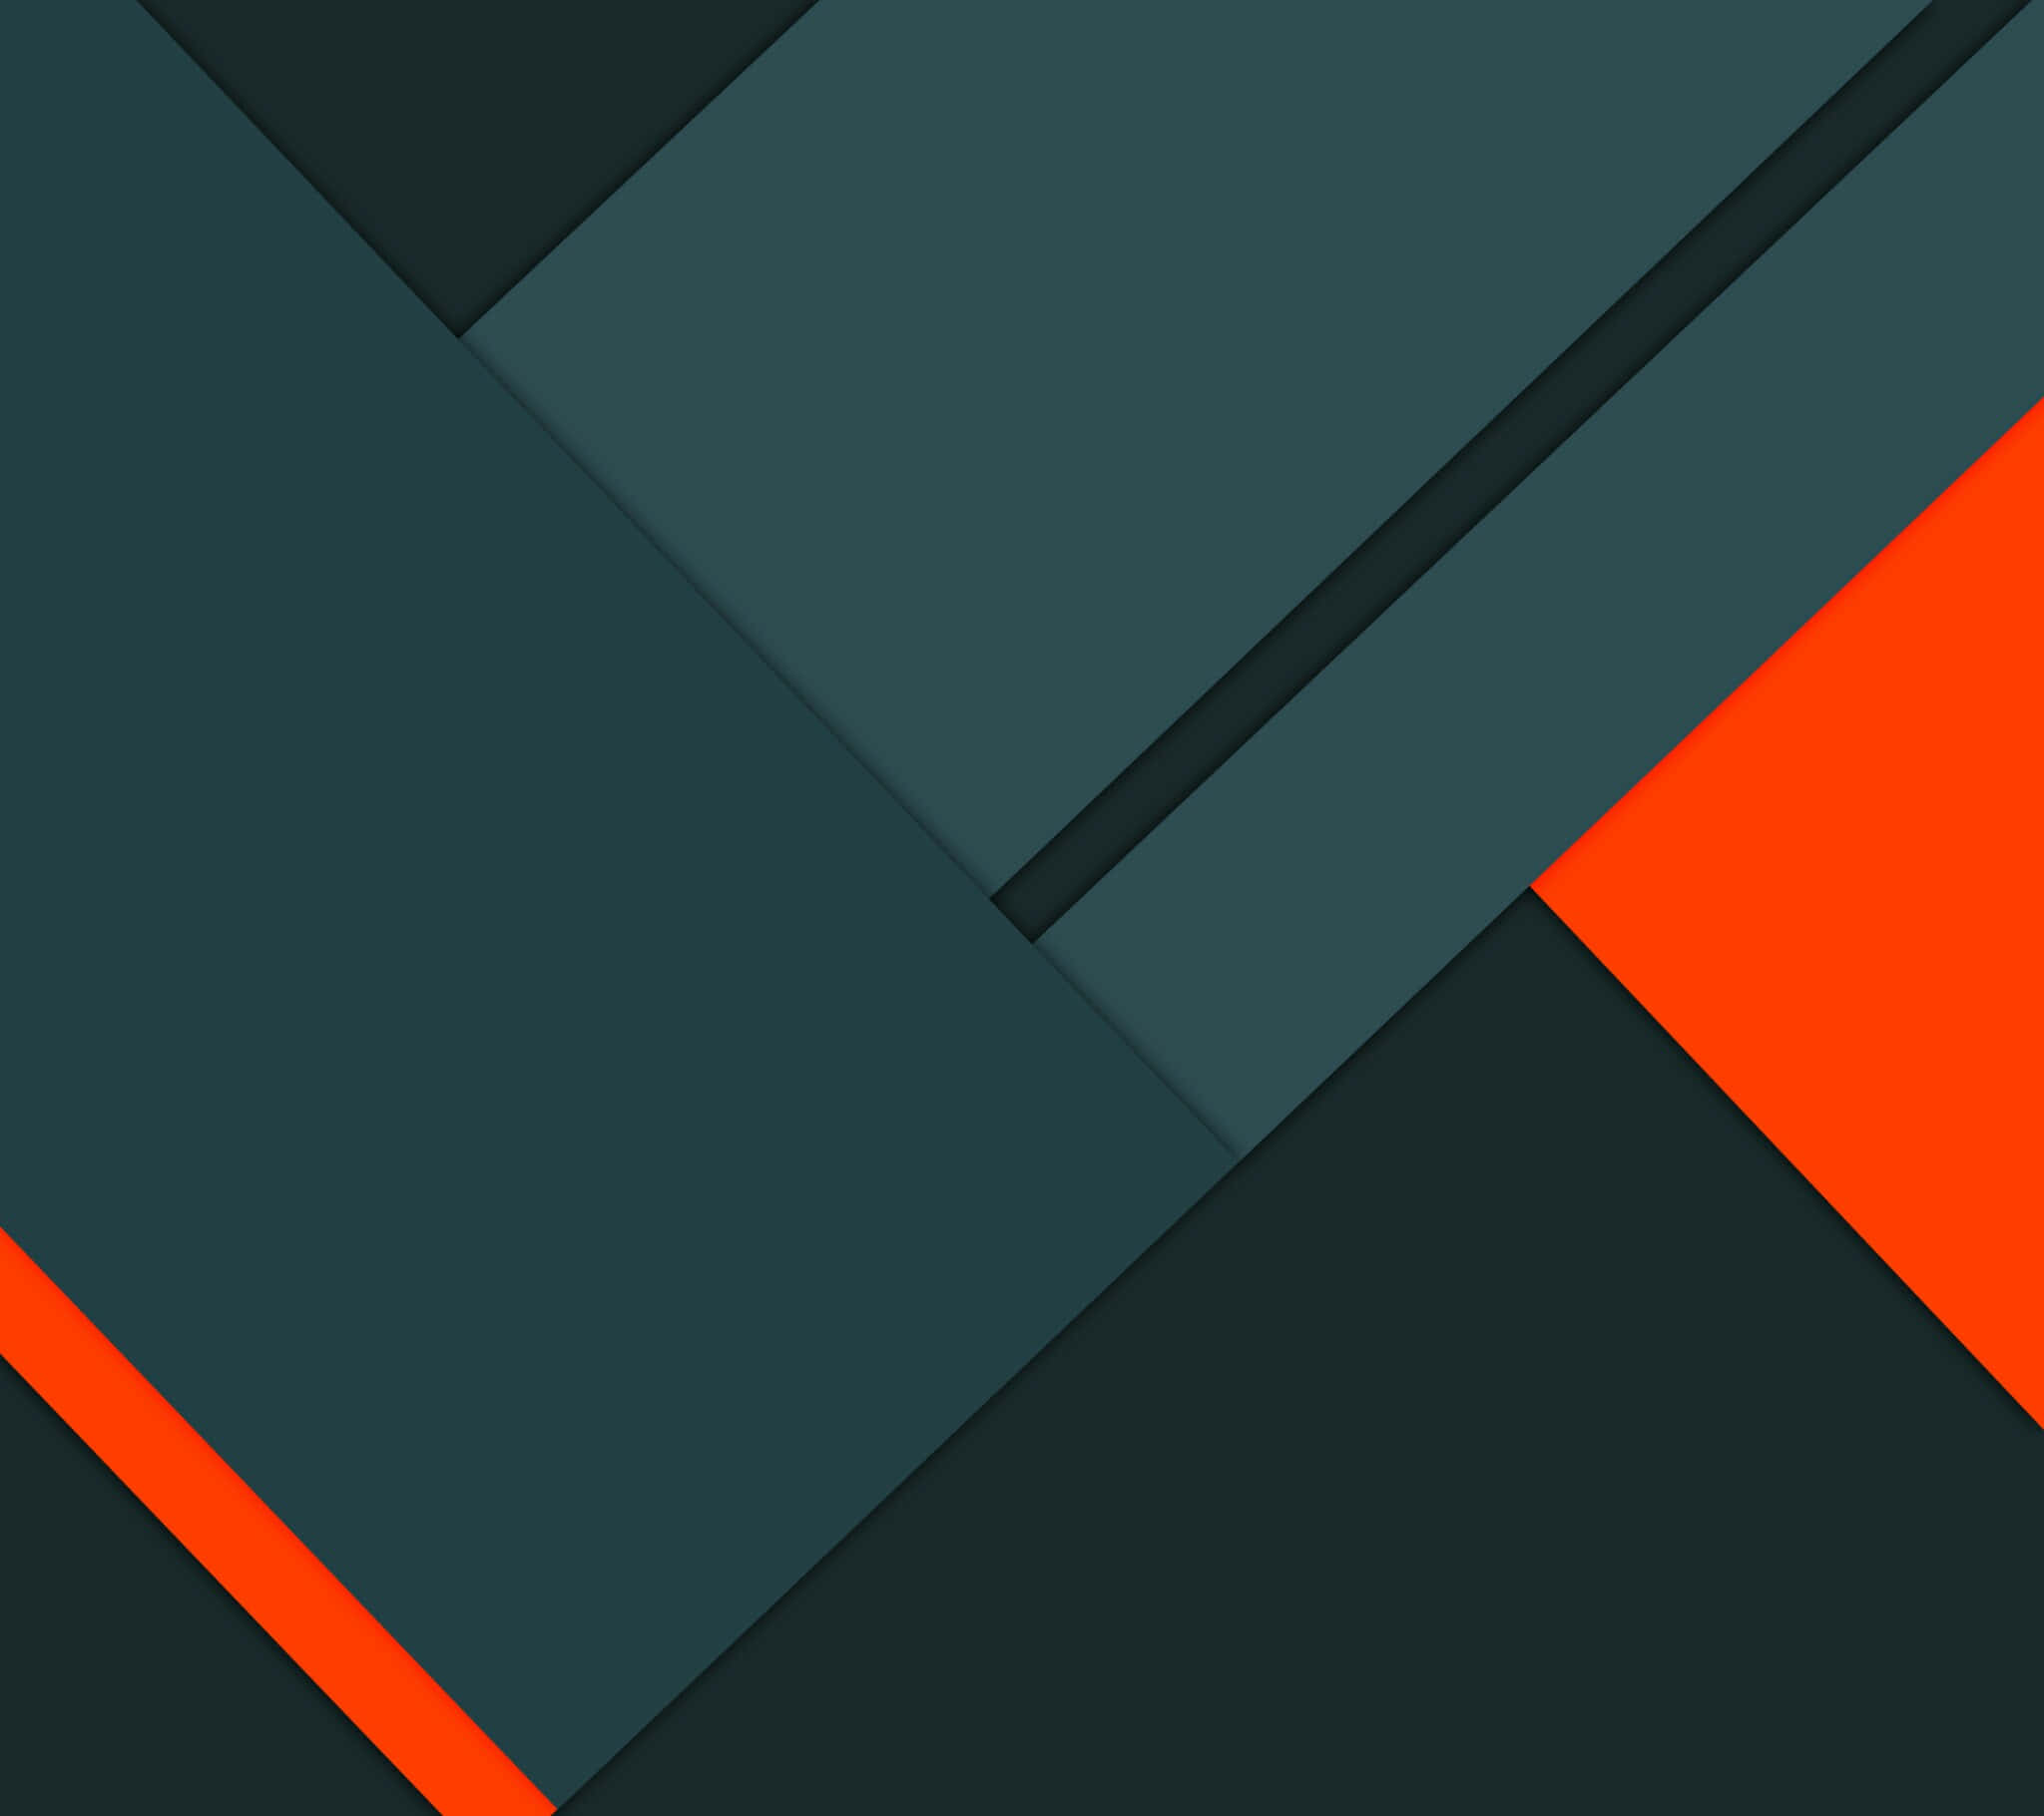 Einschwarzer Und Orangefarbener Hintergrund Mit Einem Dreieck